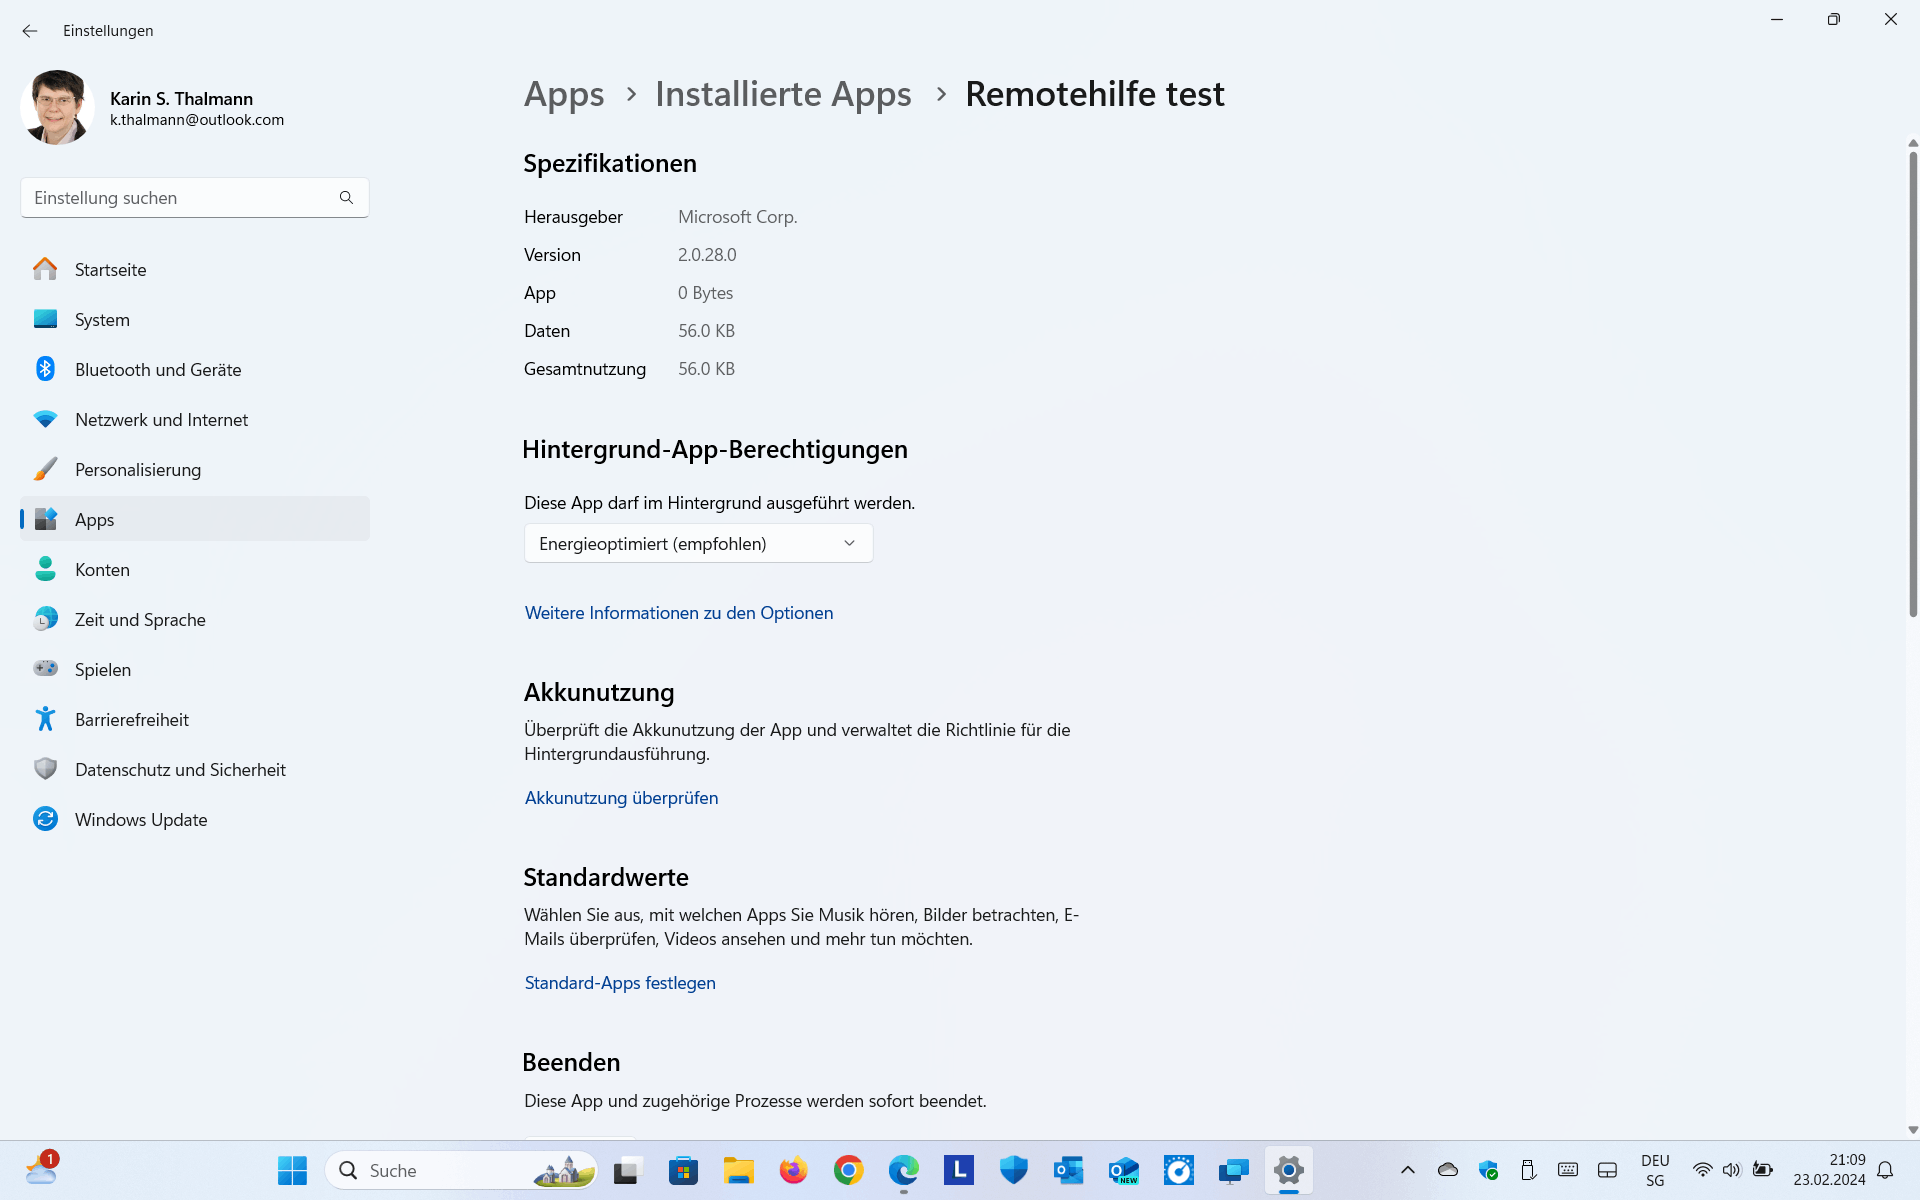 Via ein App-Update erhielt ich irrtümlich eine Testversion der Remothilfe App mit Bezeichnung Remotehilfe test